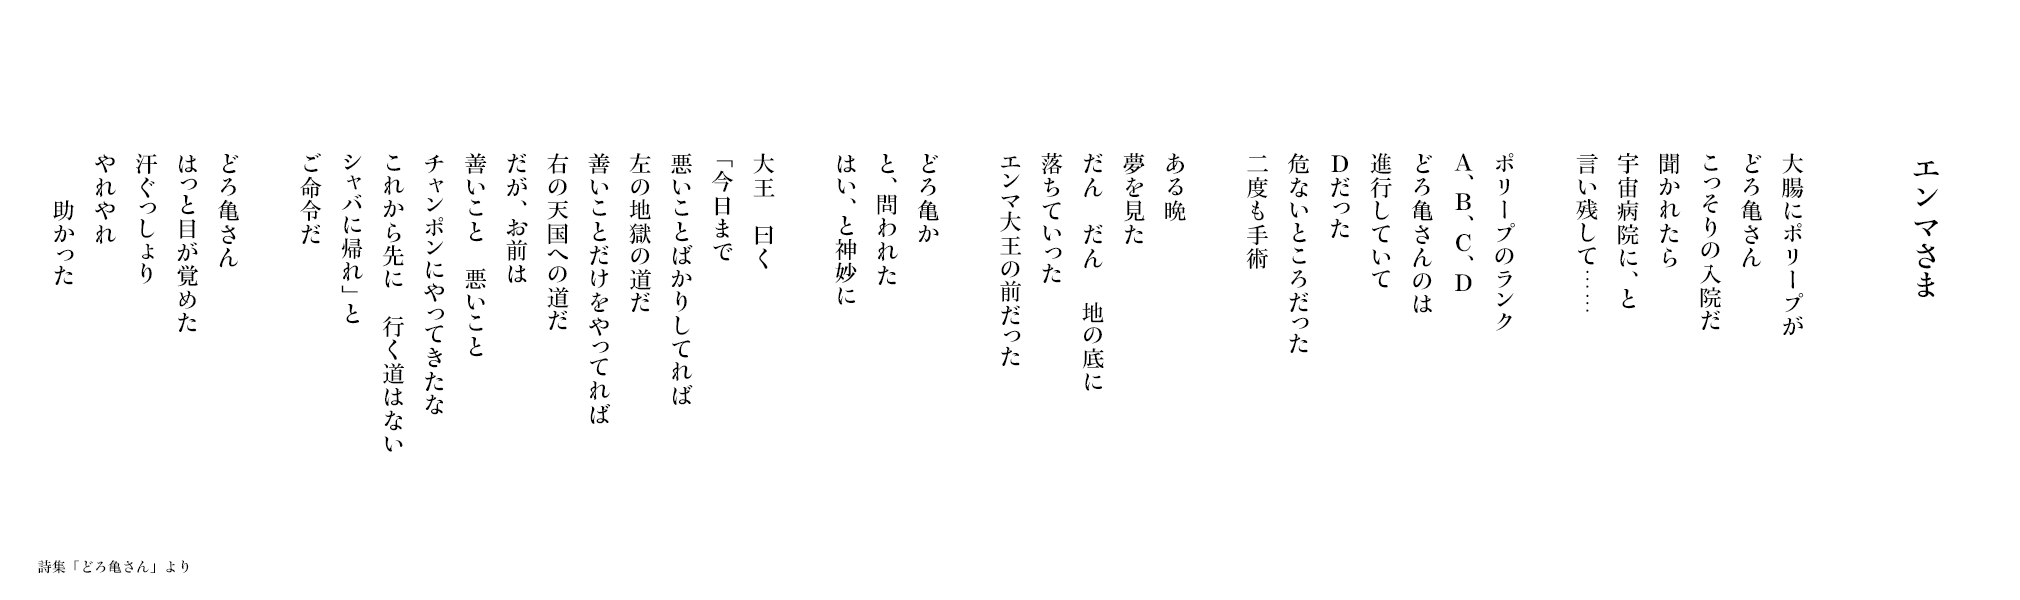 【エンマさま】詩集「どろ亀さん III」より